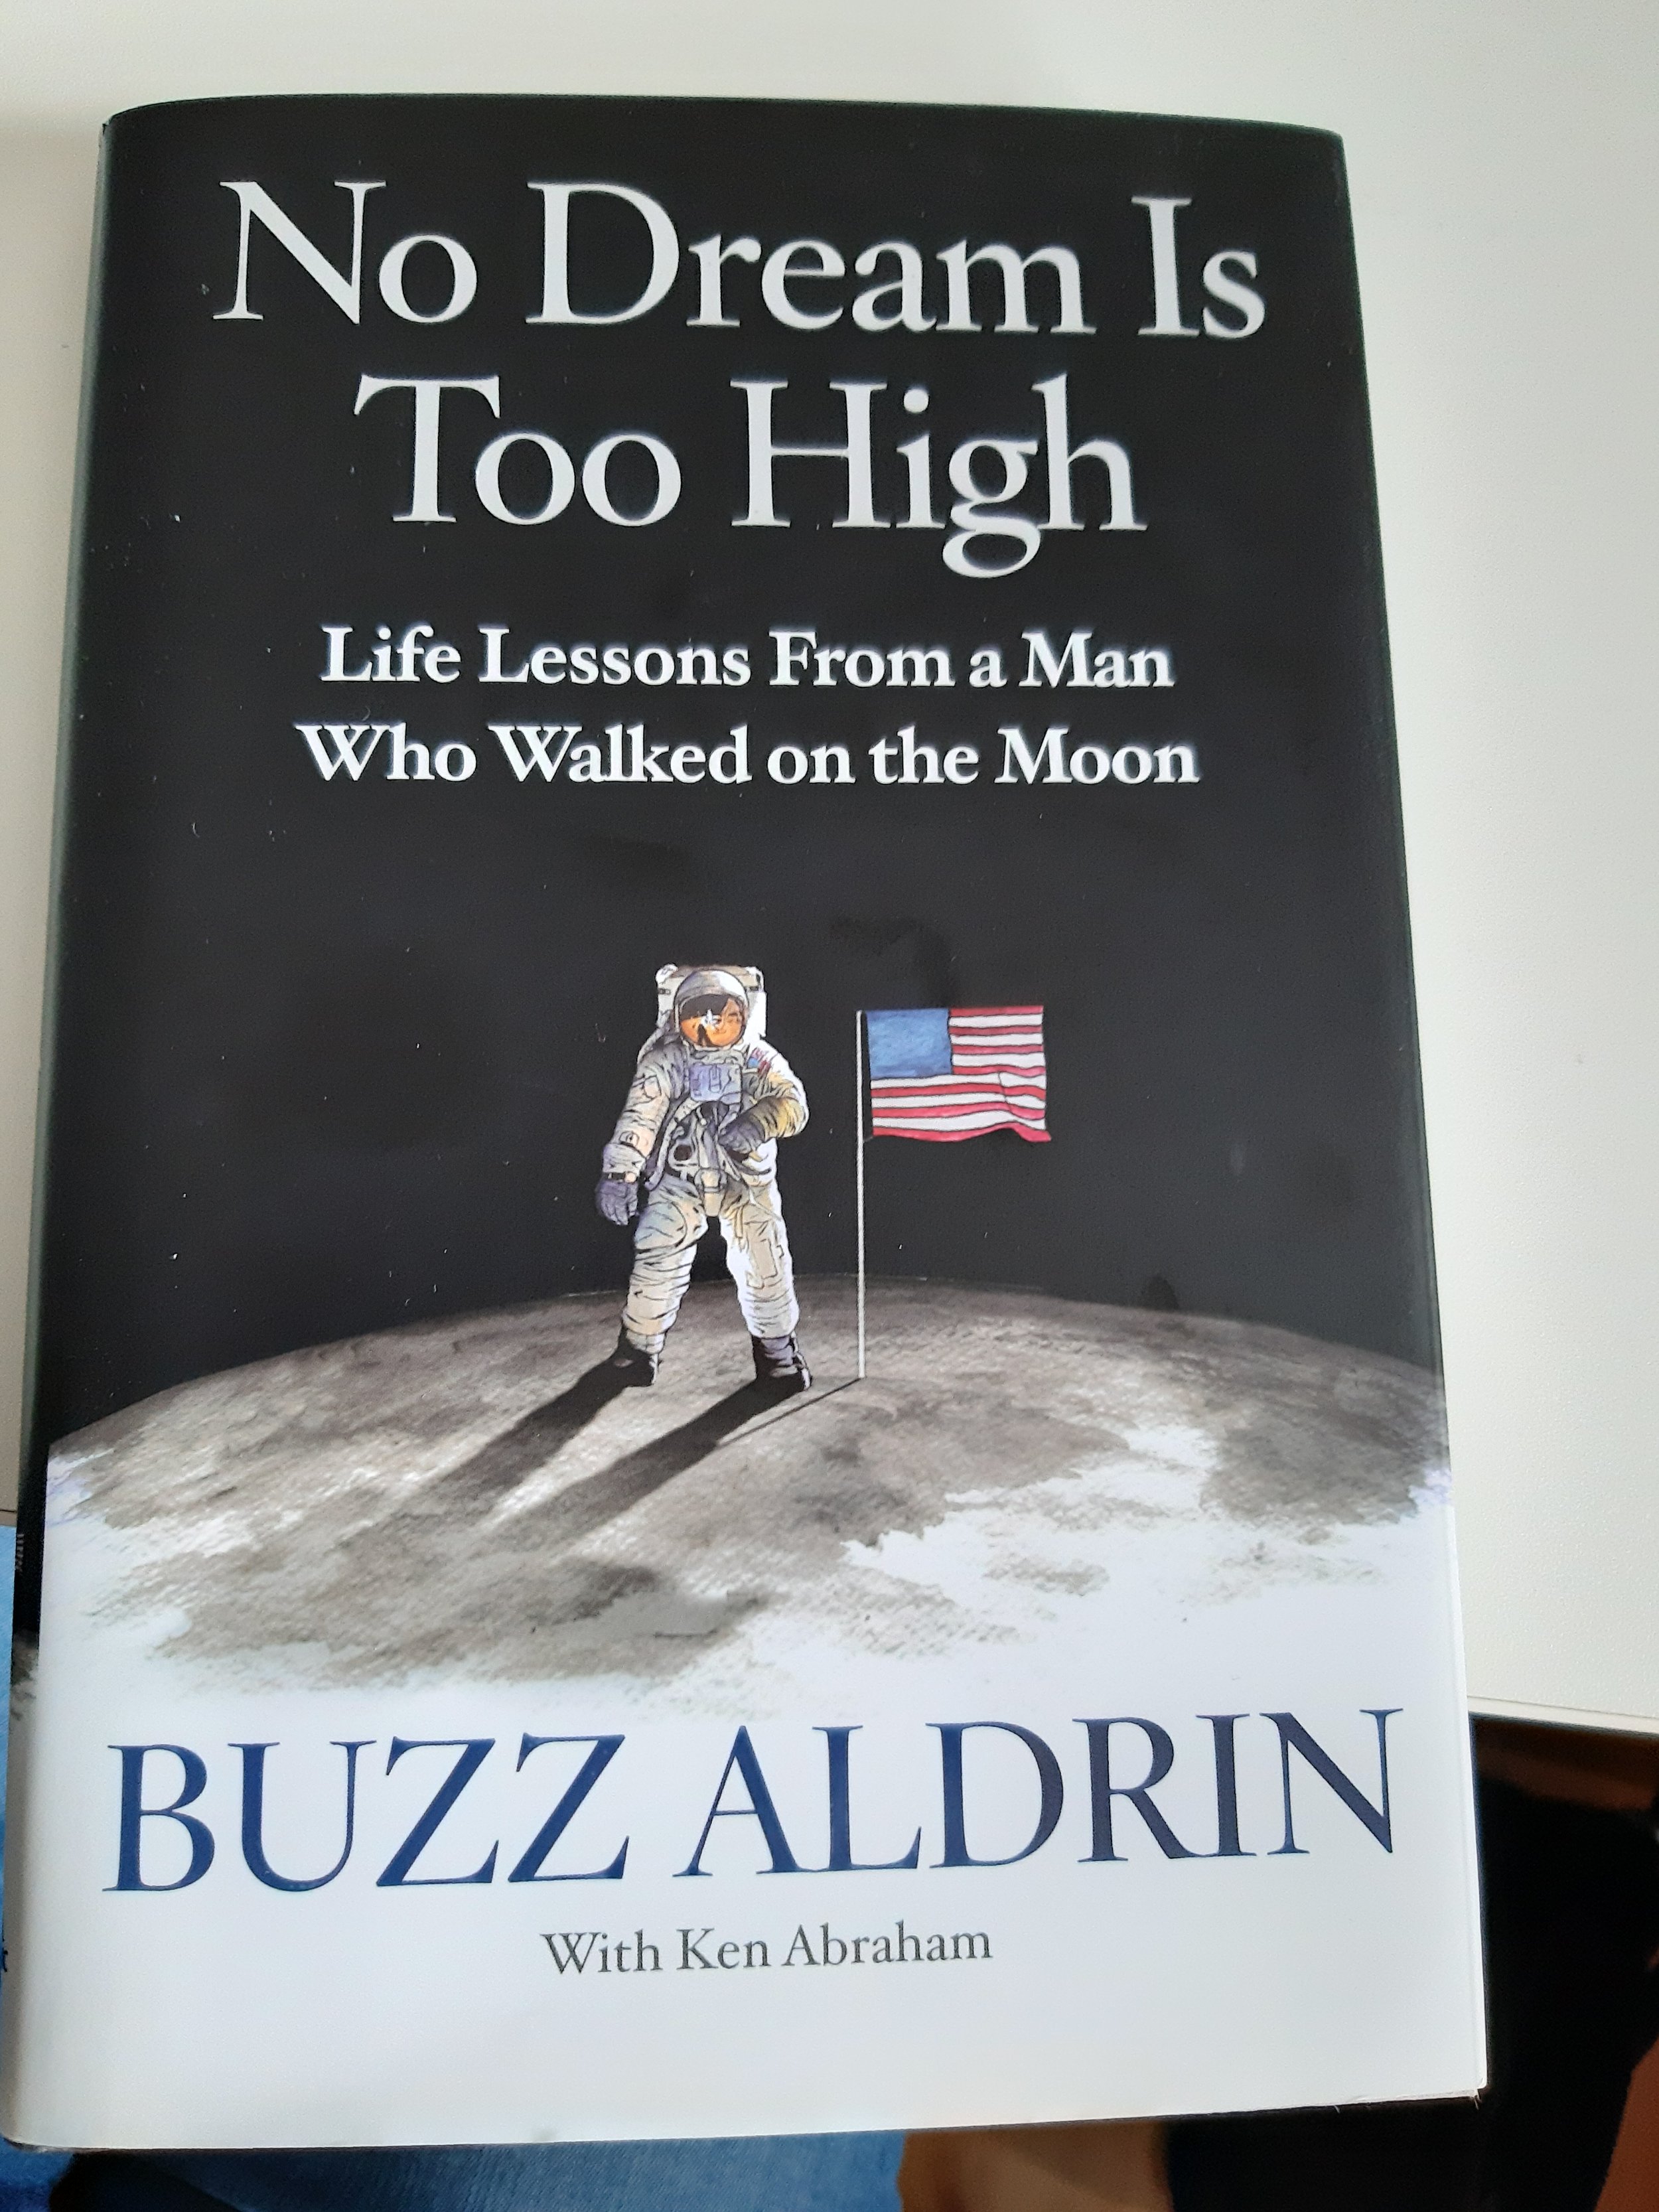 Buzz Aldrin Book cover 20190720_135028 (2).jpg